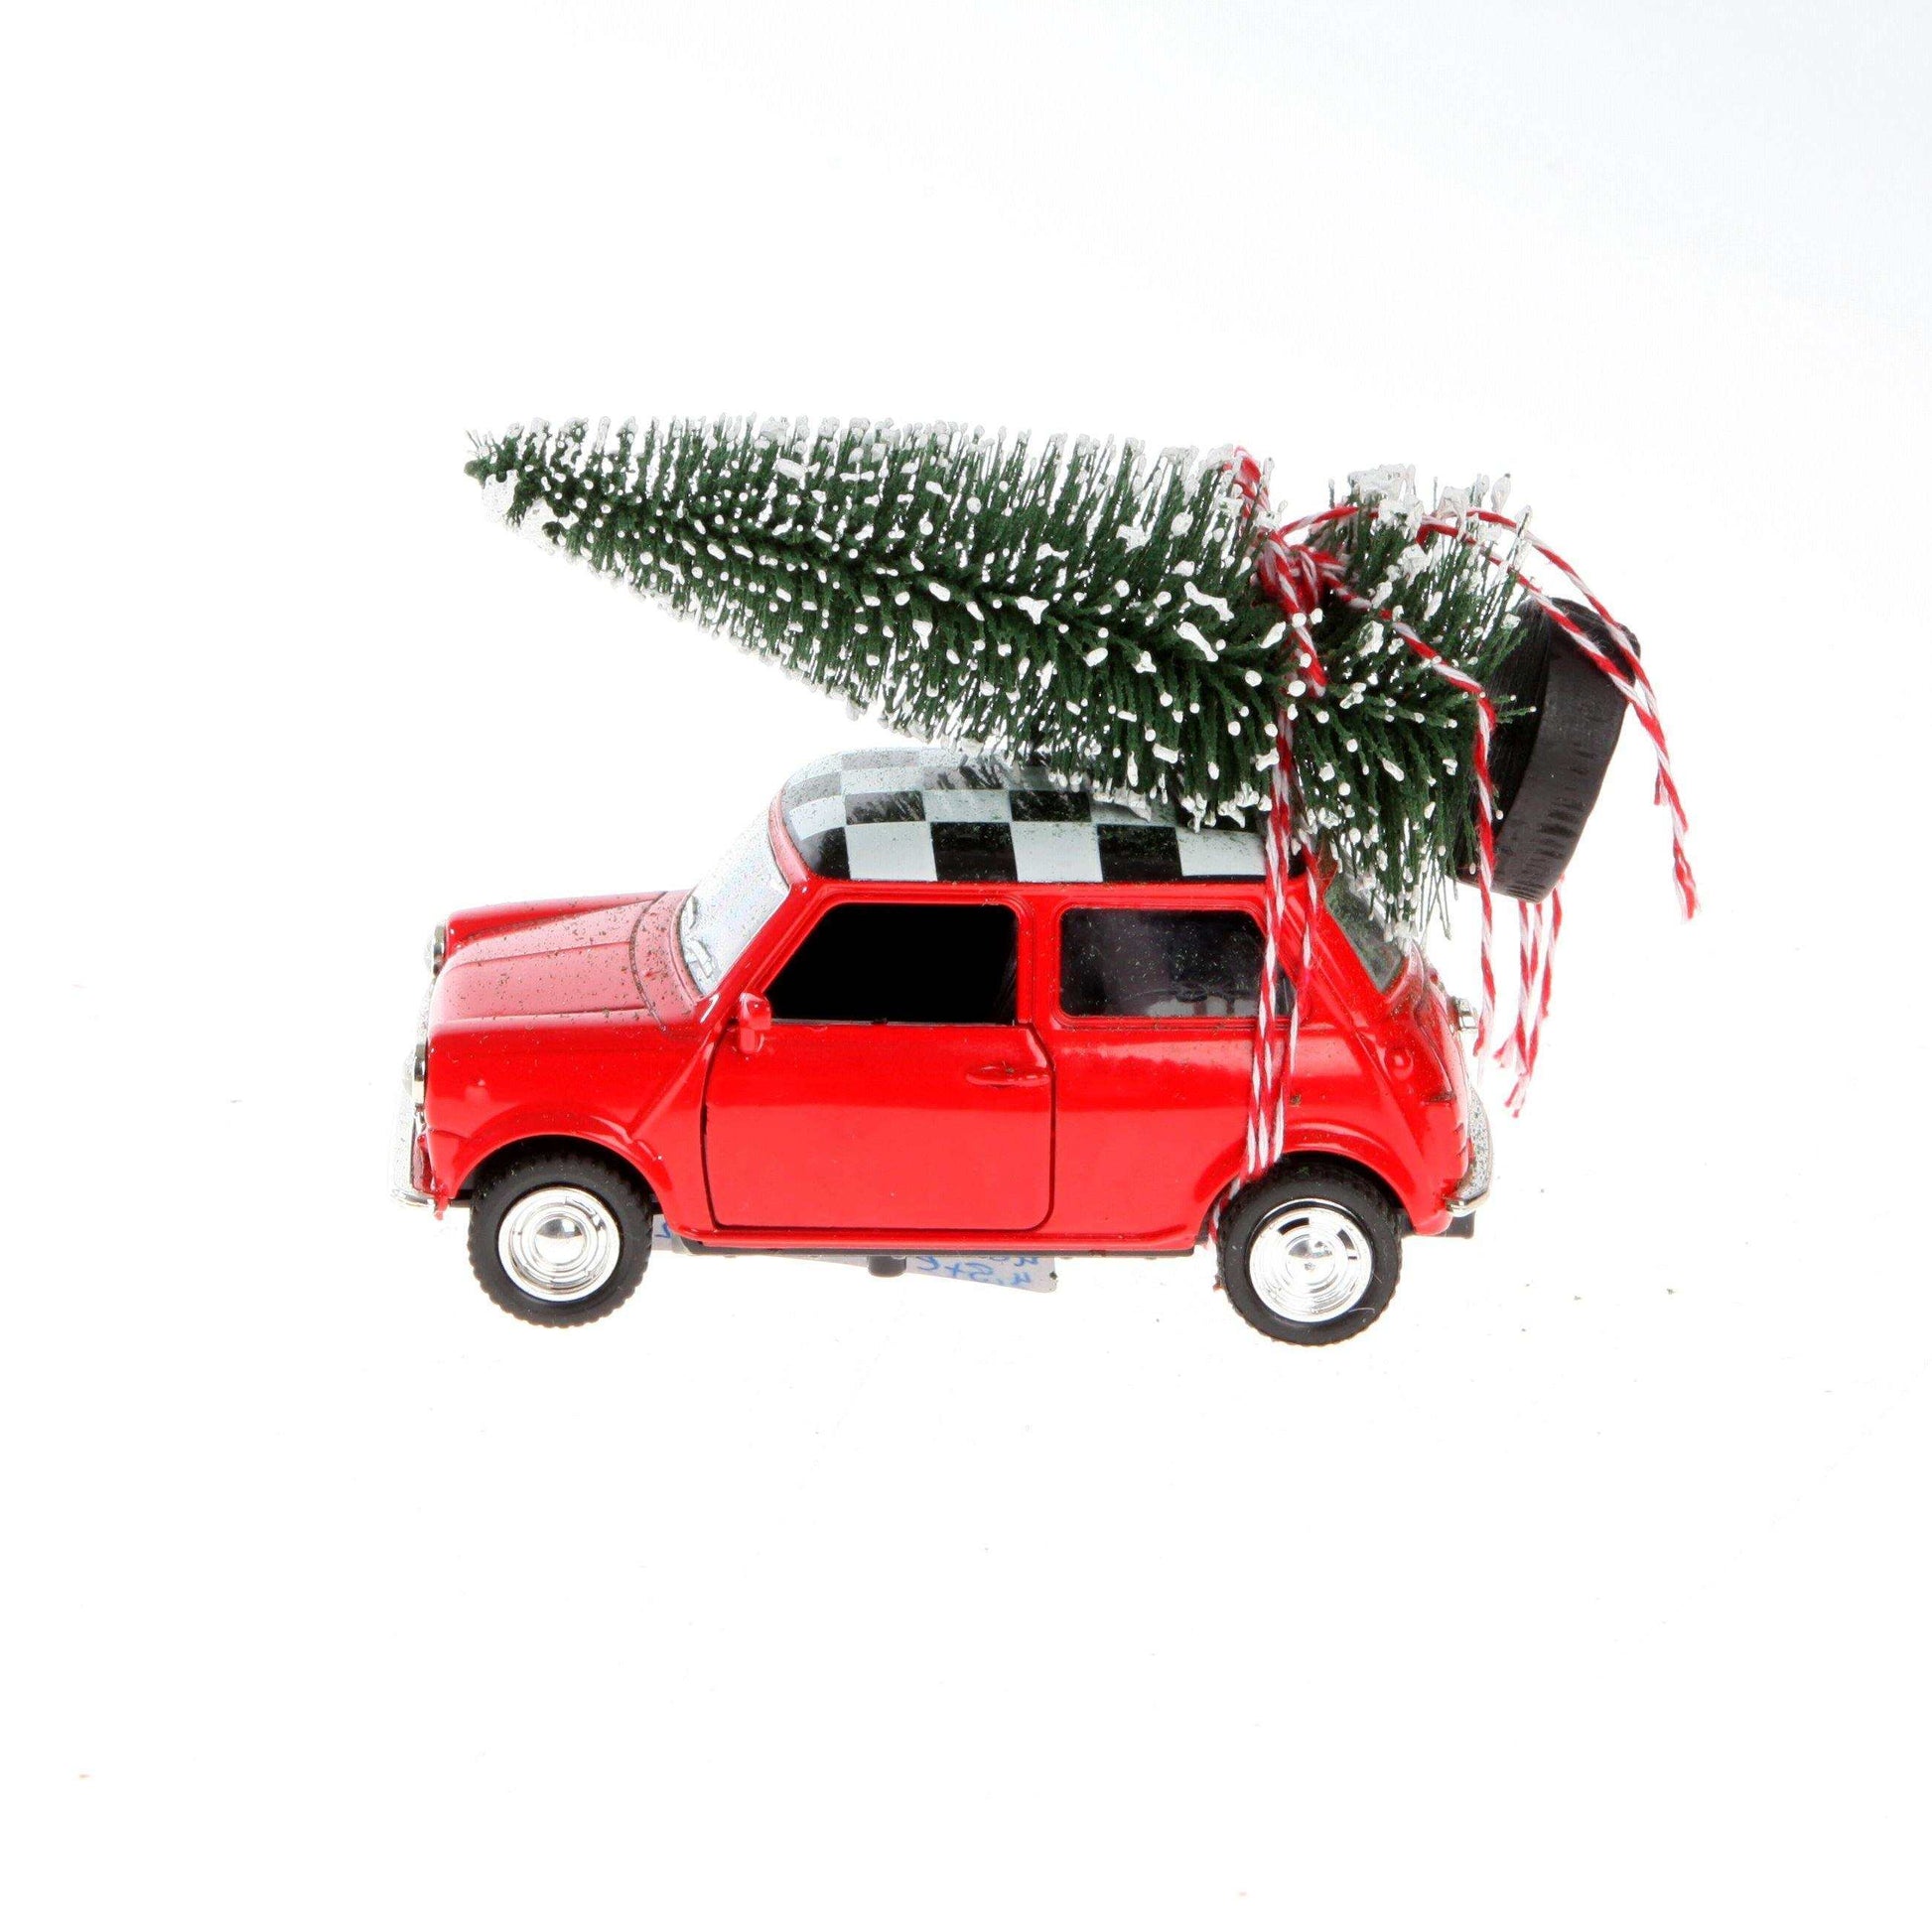 Bil - Gran på Taket - 8cm - The Christmas Store - Sverige